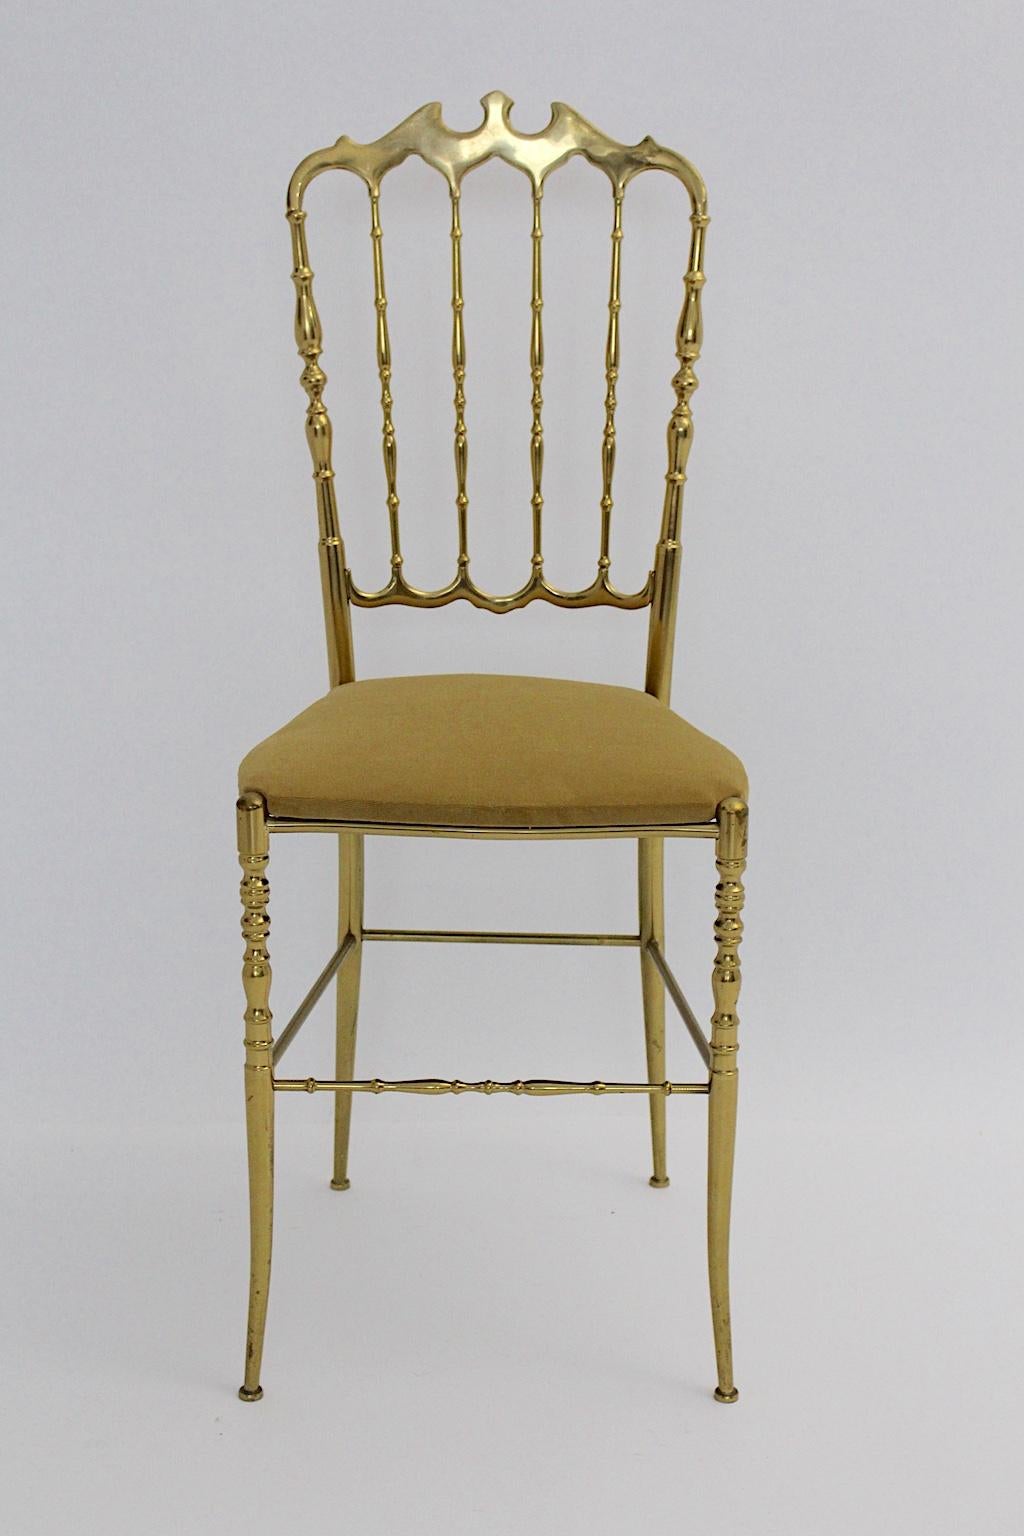 Chaise d'appoint ou chaise Chiavari en laiton vintage Mid-Century Modern, qui a été conçue, 1950s, Italie.
La chaise d'appoint en laiton a été retapissée et l'assise est recouverte de velours marron clair.
Le cadre en laiton présente également une